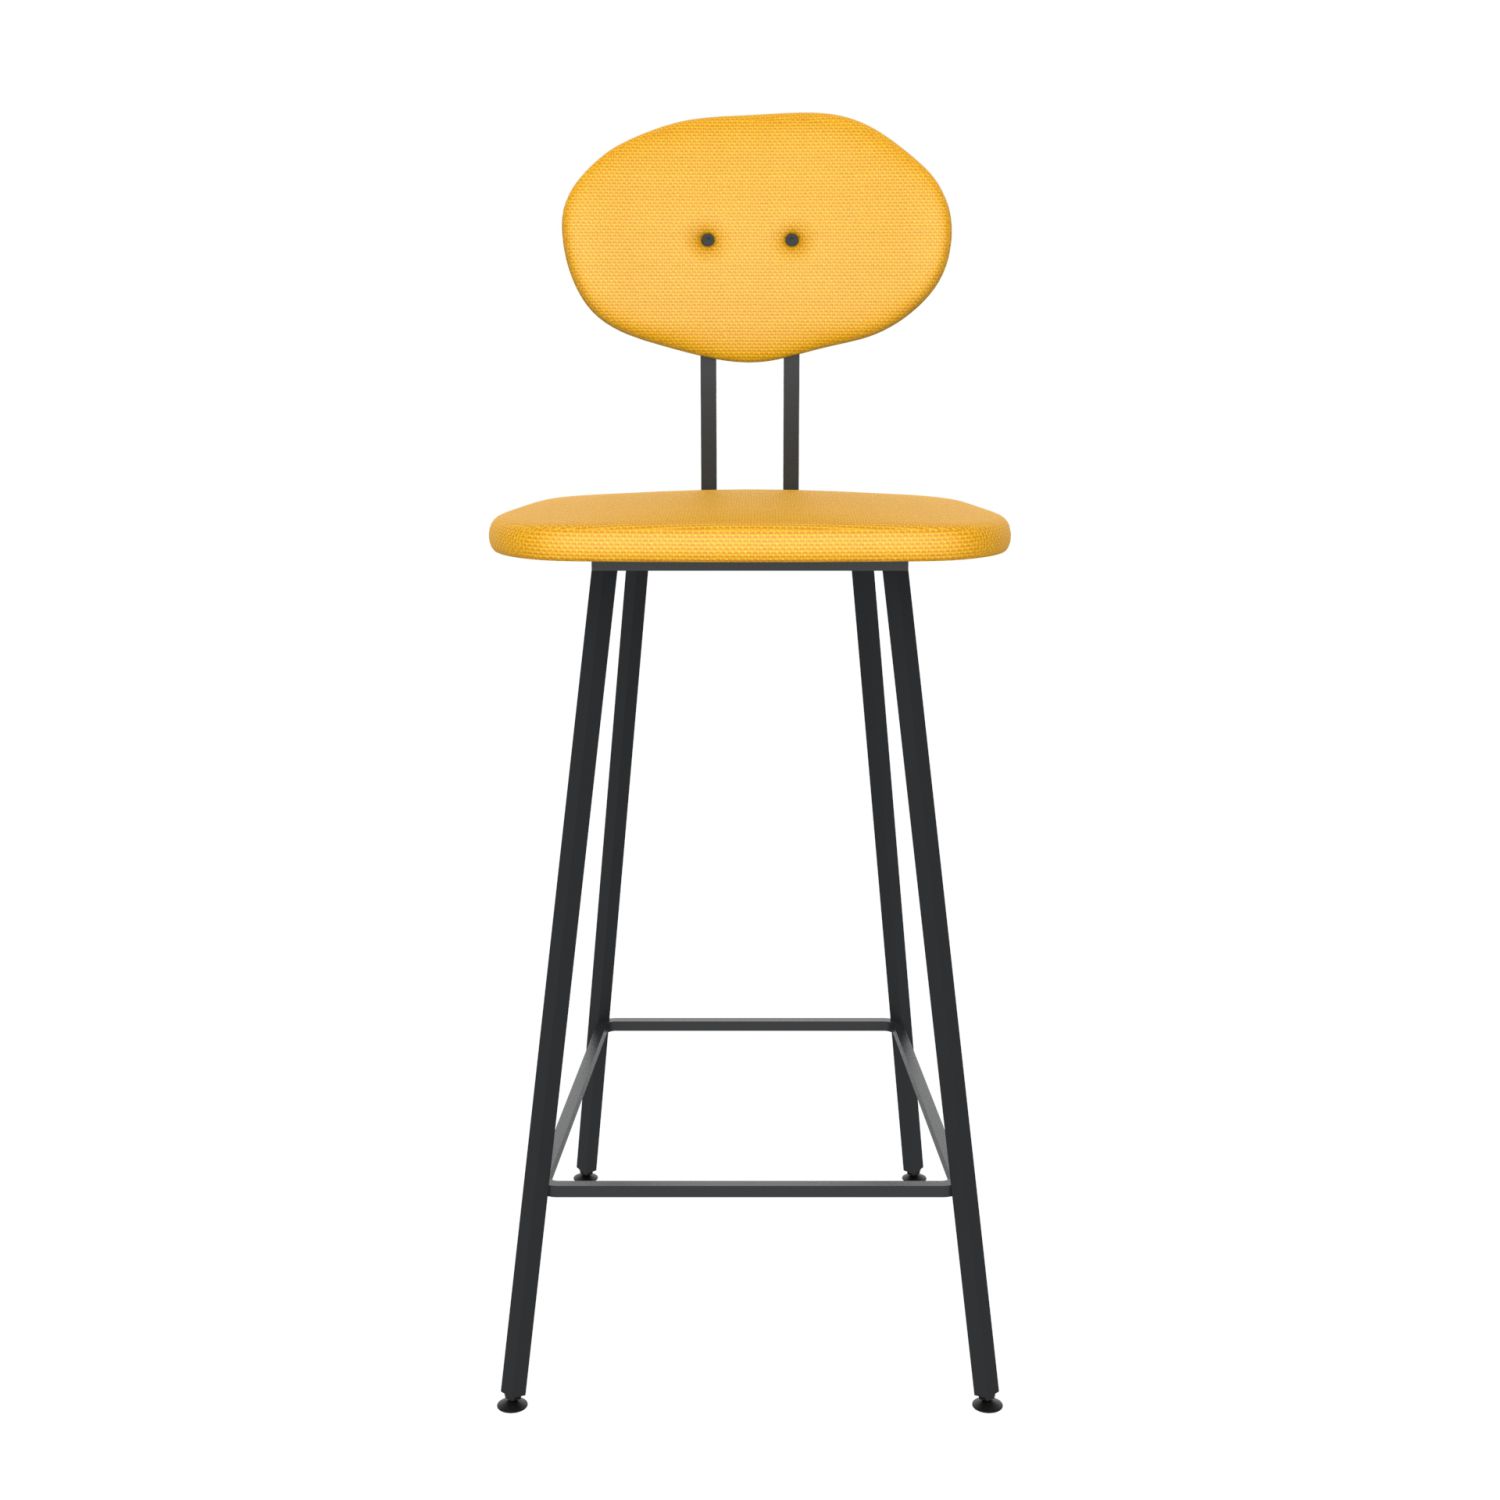 maarten baas barstool 75 cm without armrests backrest d lemon yellow 051 frame black